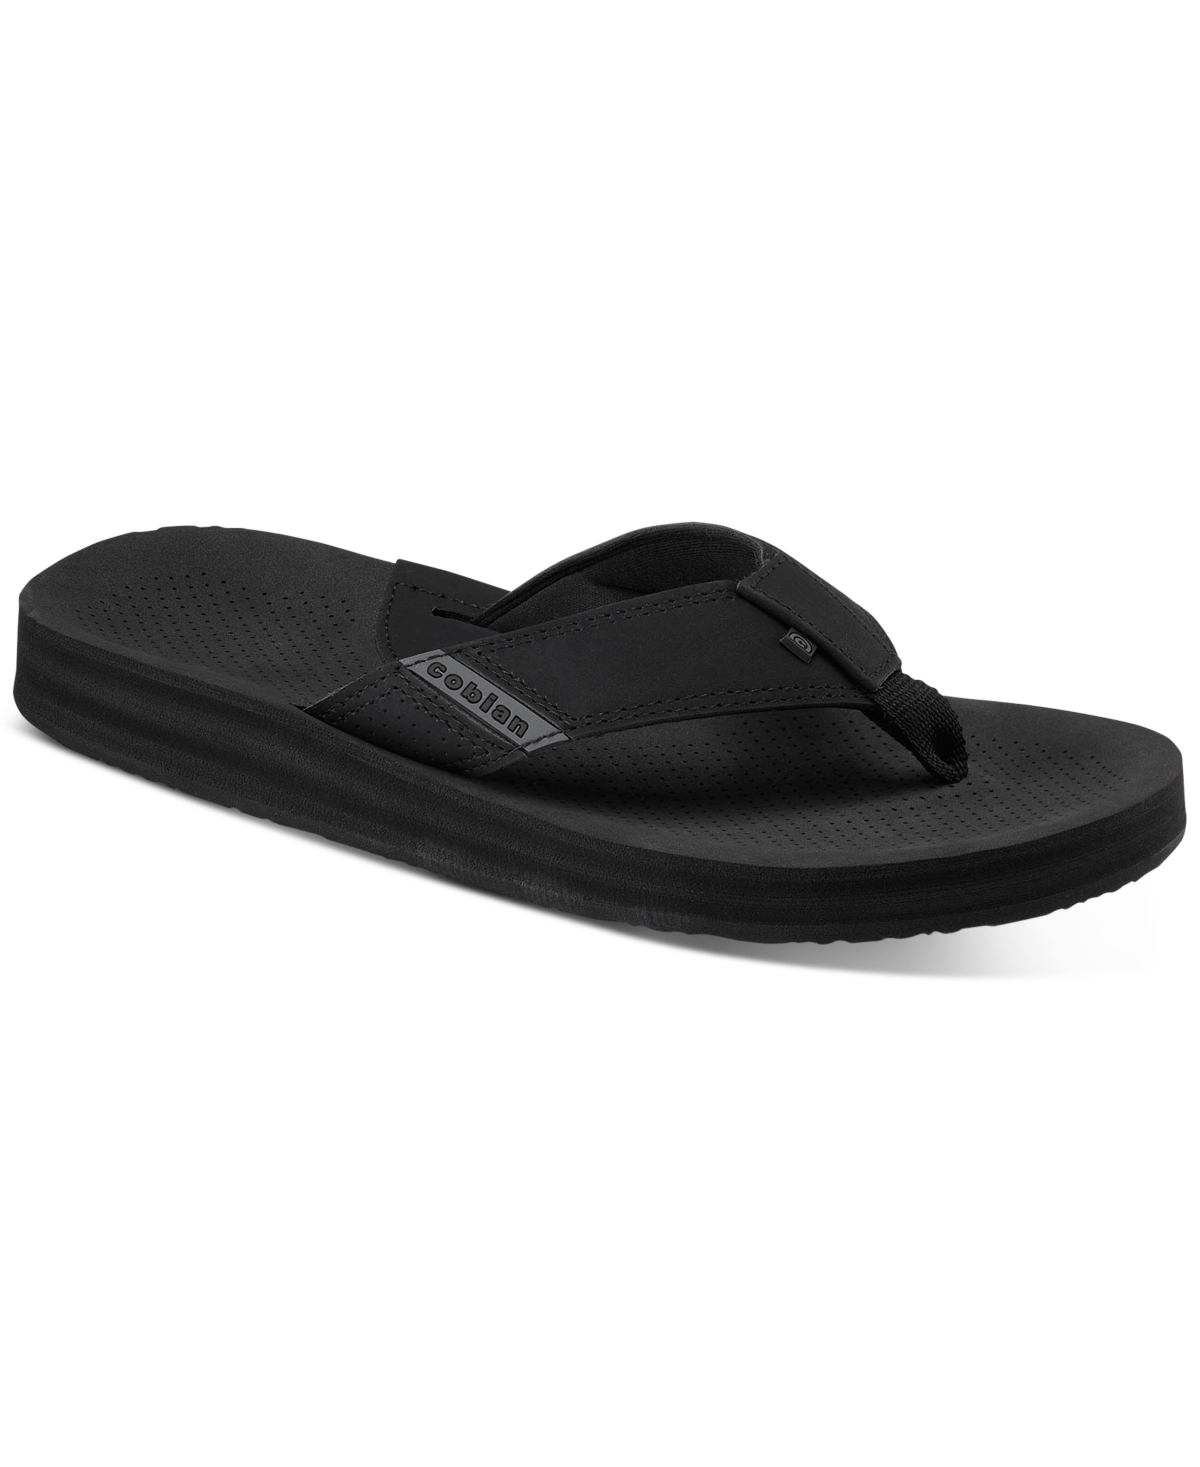 Men's Arv 2 Sandals - Indigo